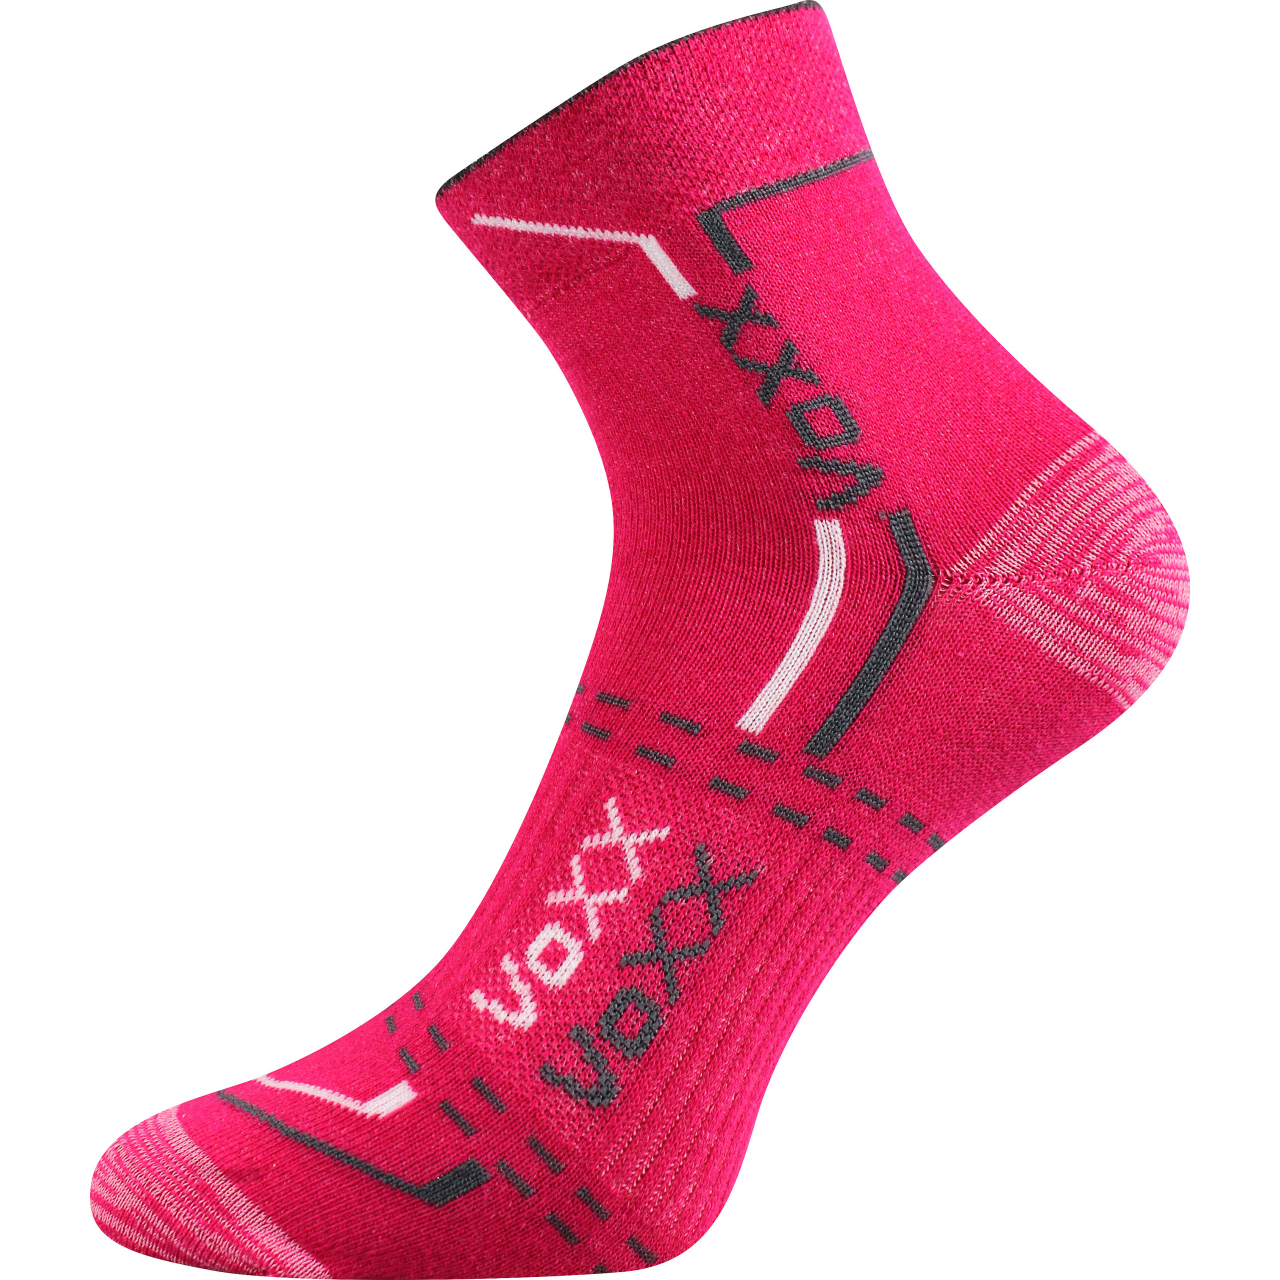 Ponožky unisex sportovní Voxx Franz 03 - tmavě růžové, 39-42